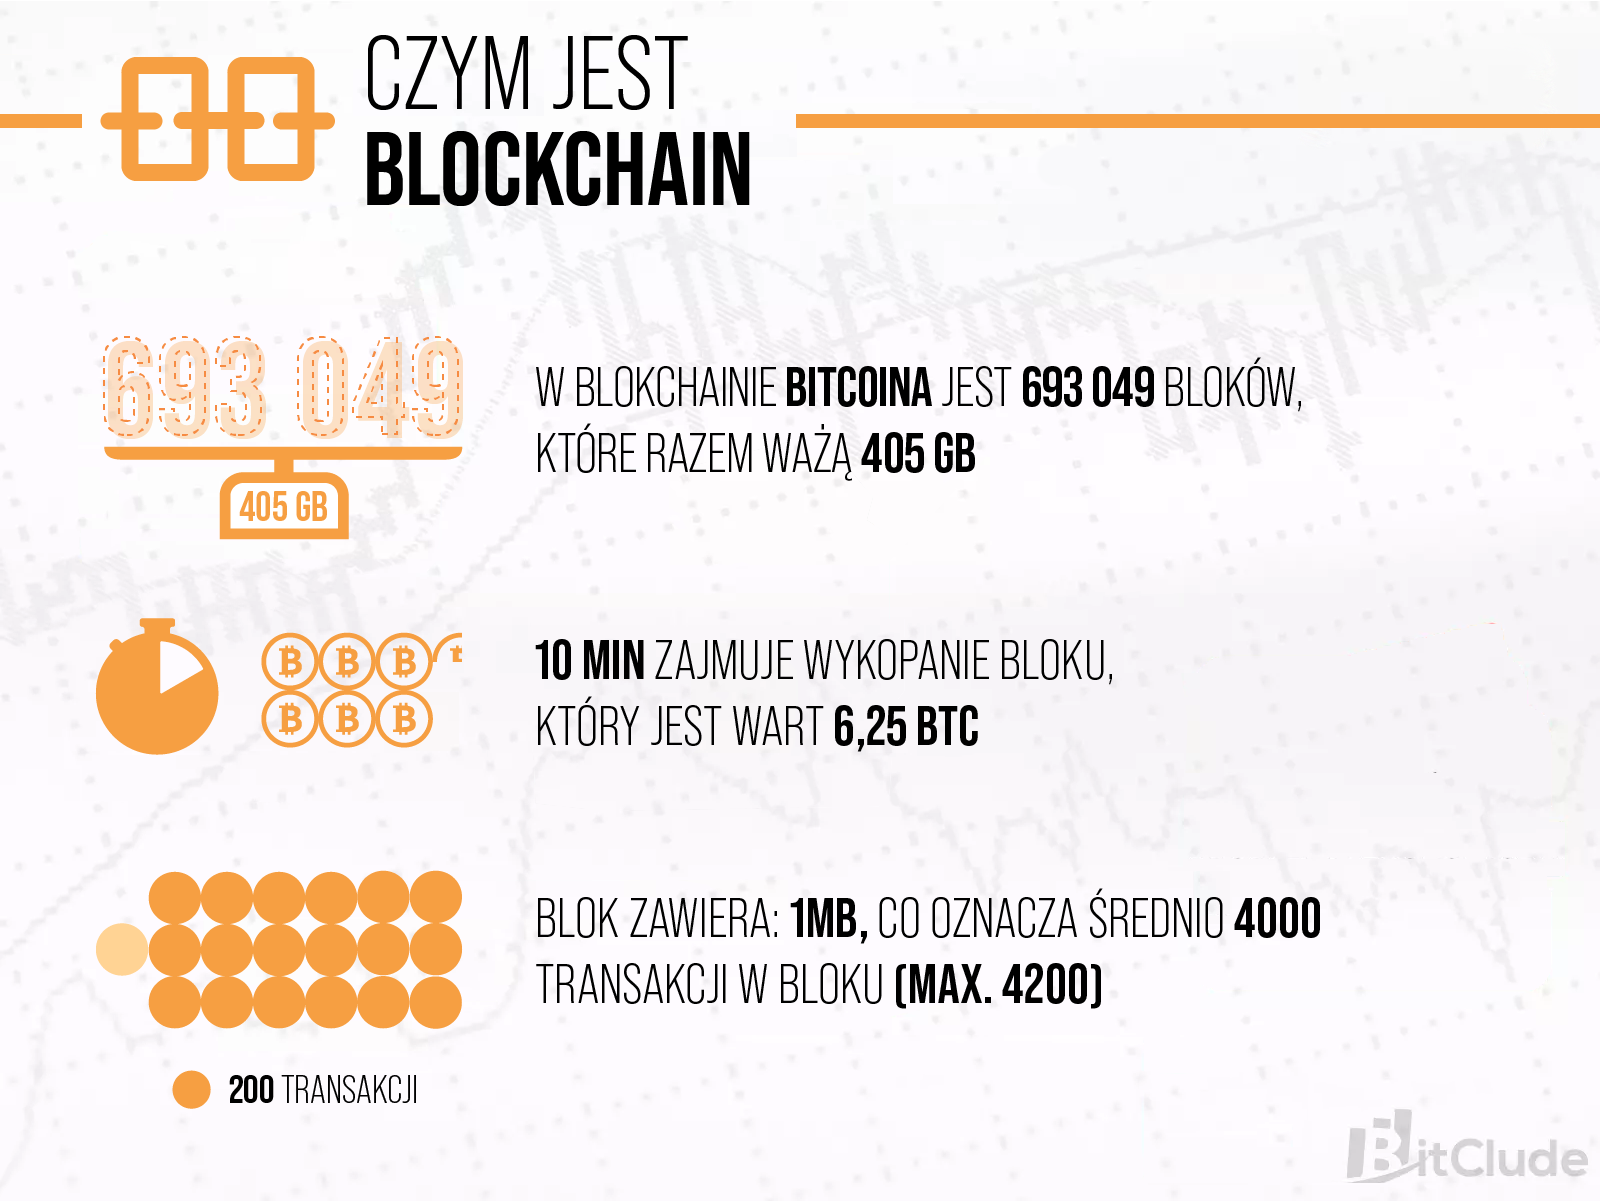 Blockchain to sieć połączonych bloków. W blockchain Bitcoina powstało 693049 bloków, które ważą około 450 GB.